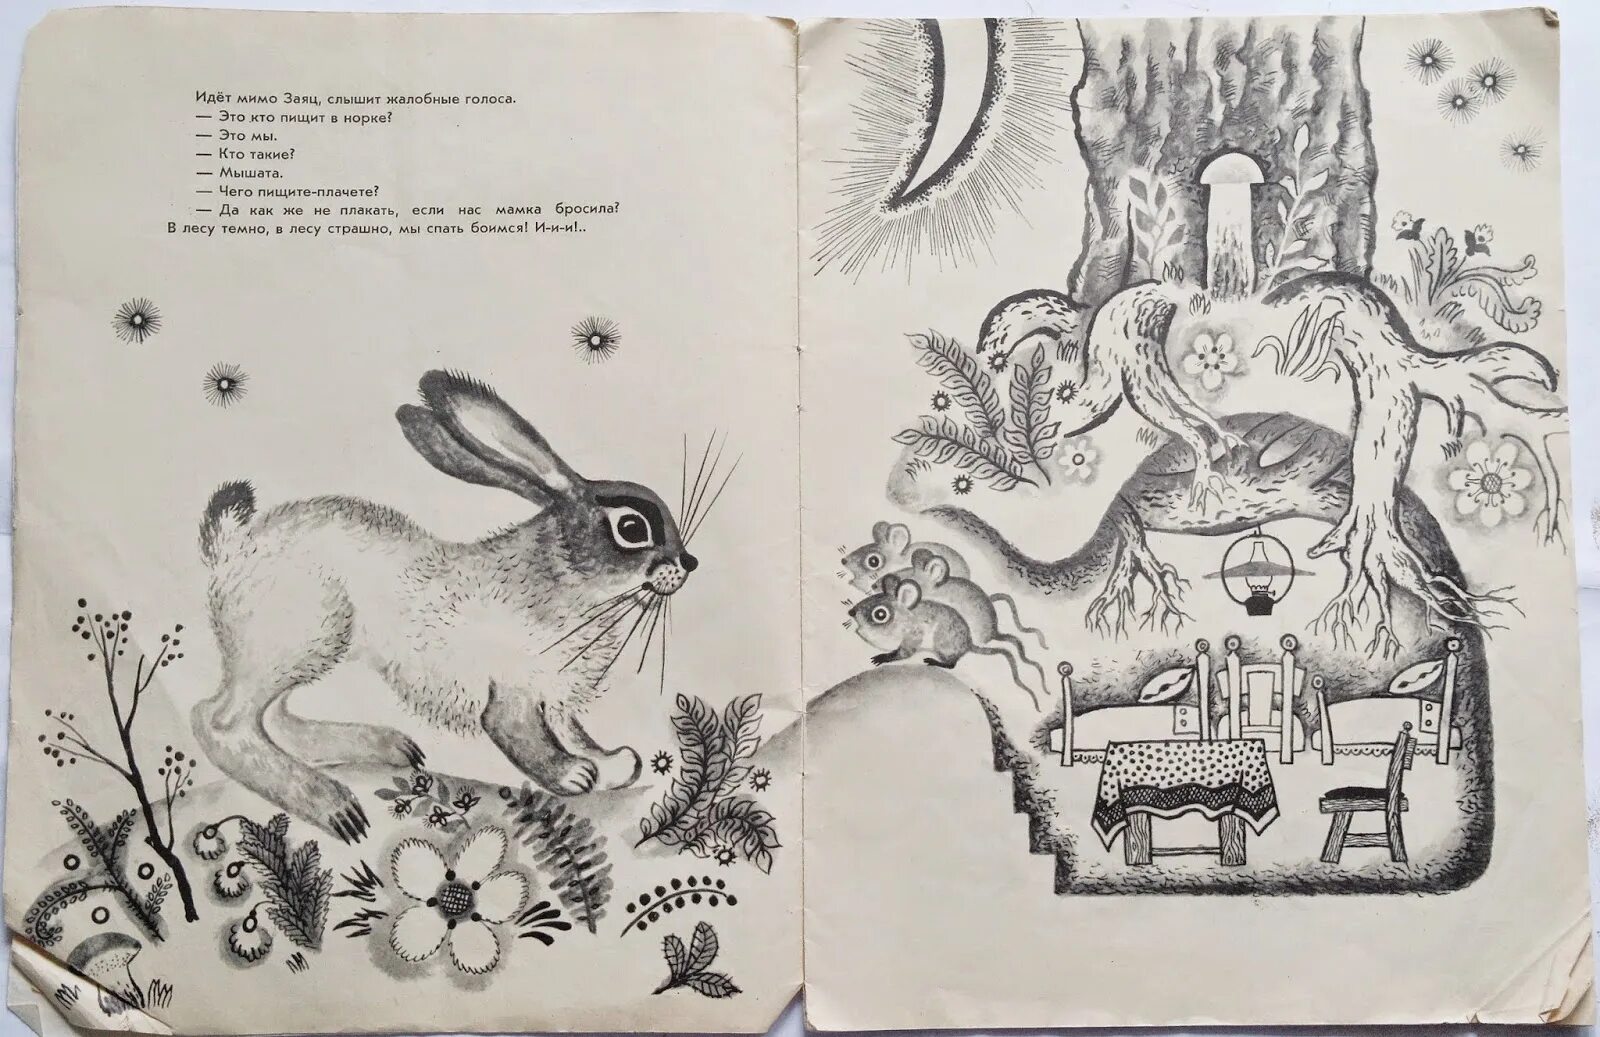 Сказка о глупом мышонке иллюстрации. Детская книжка про мышат в лесу. Советская детская книжка про мышат. Сказка о глупом мышонке иллюстрации Лебедева.